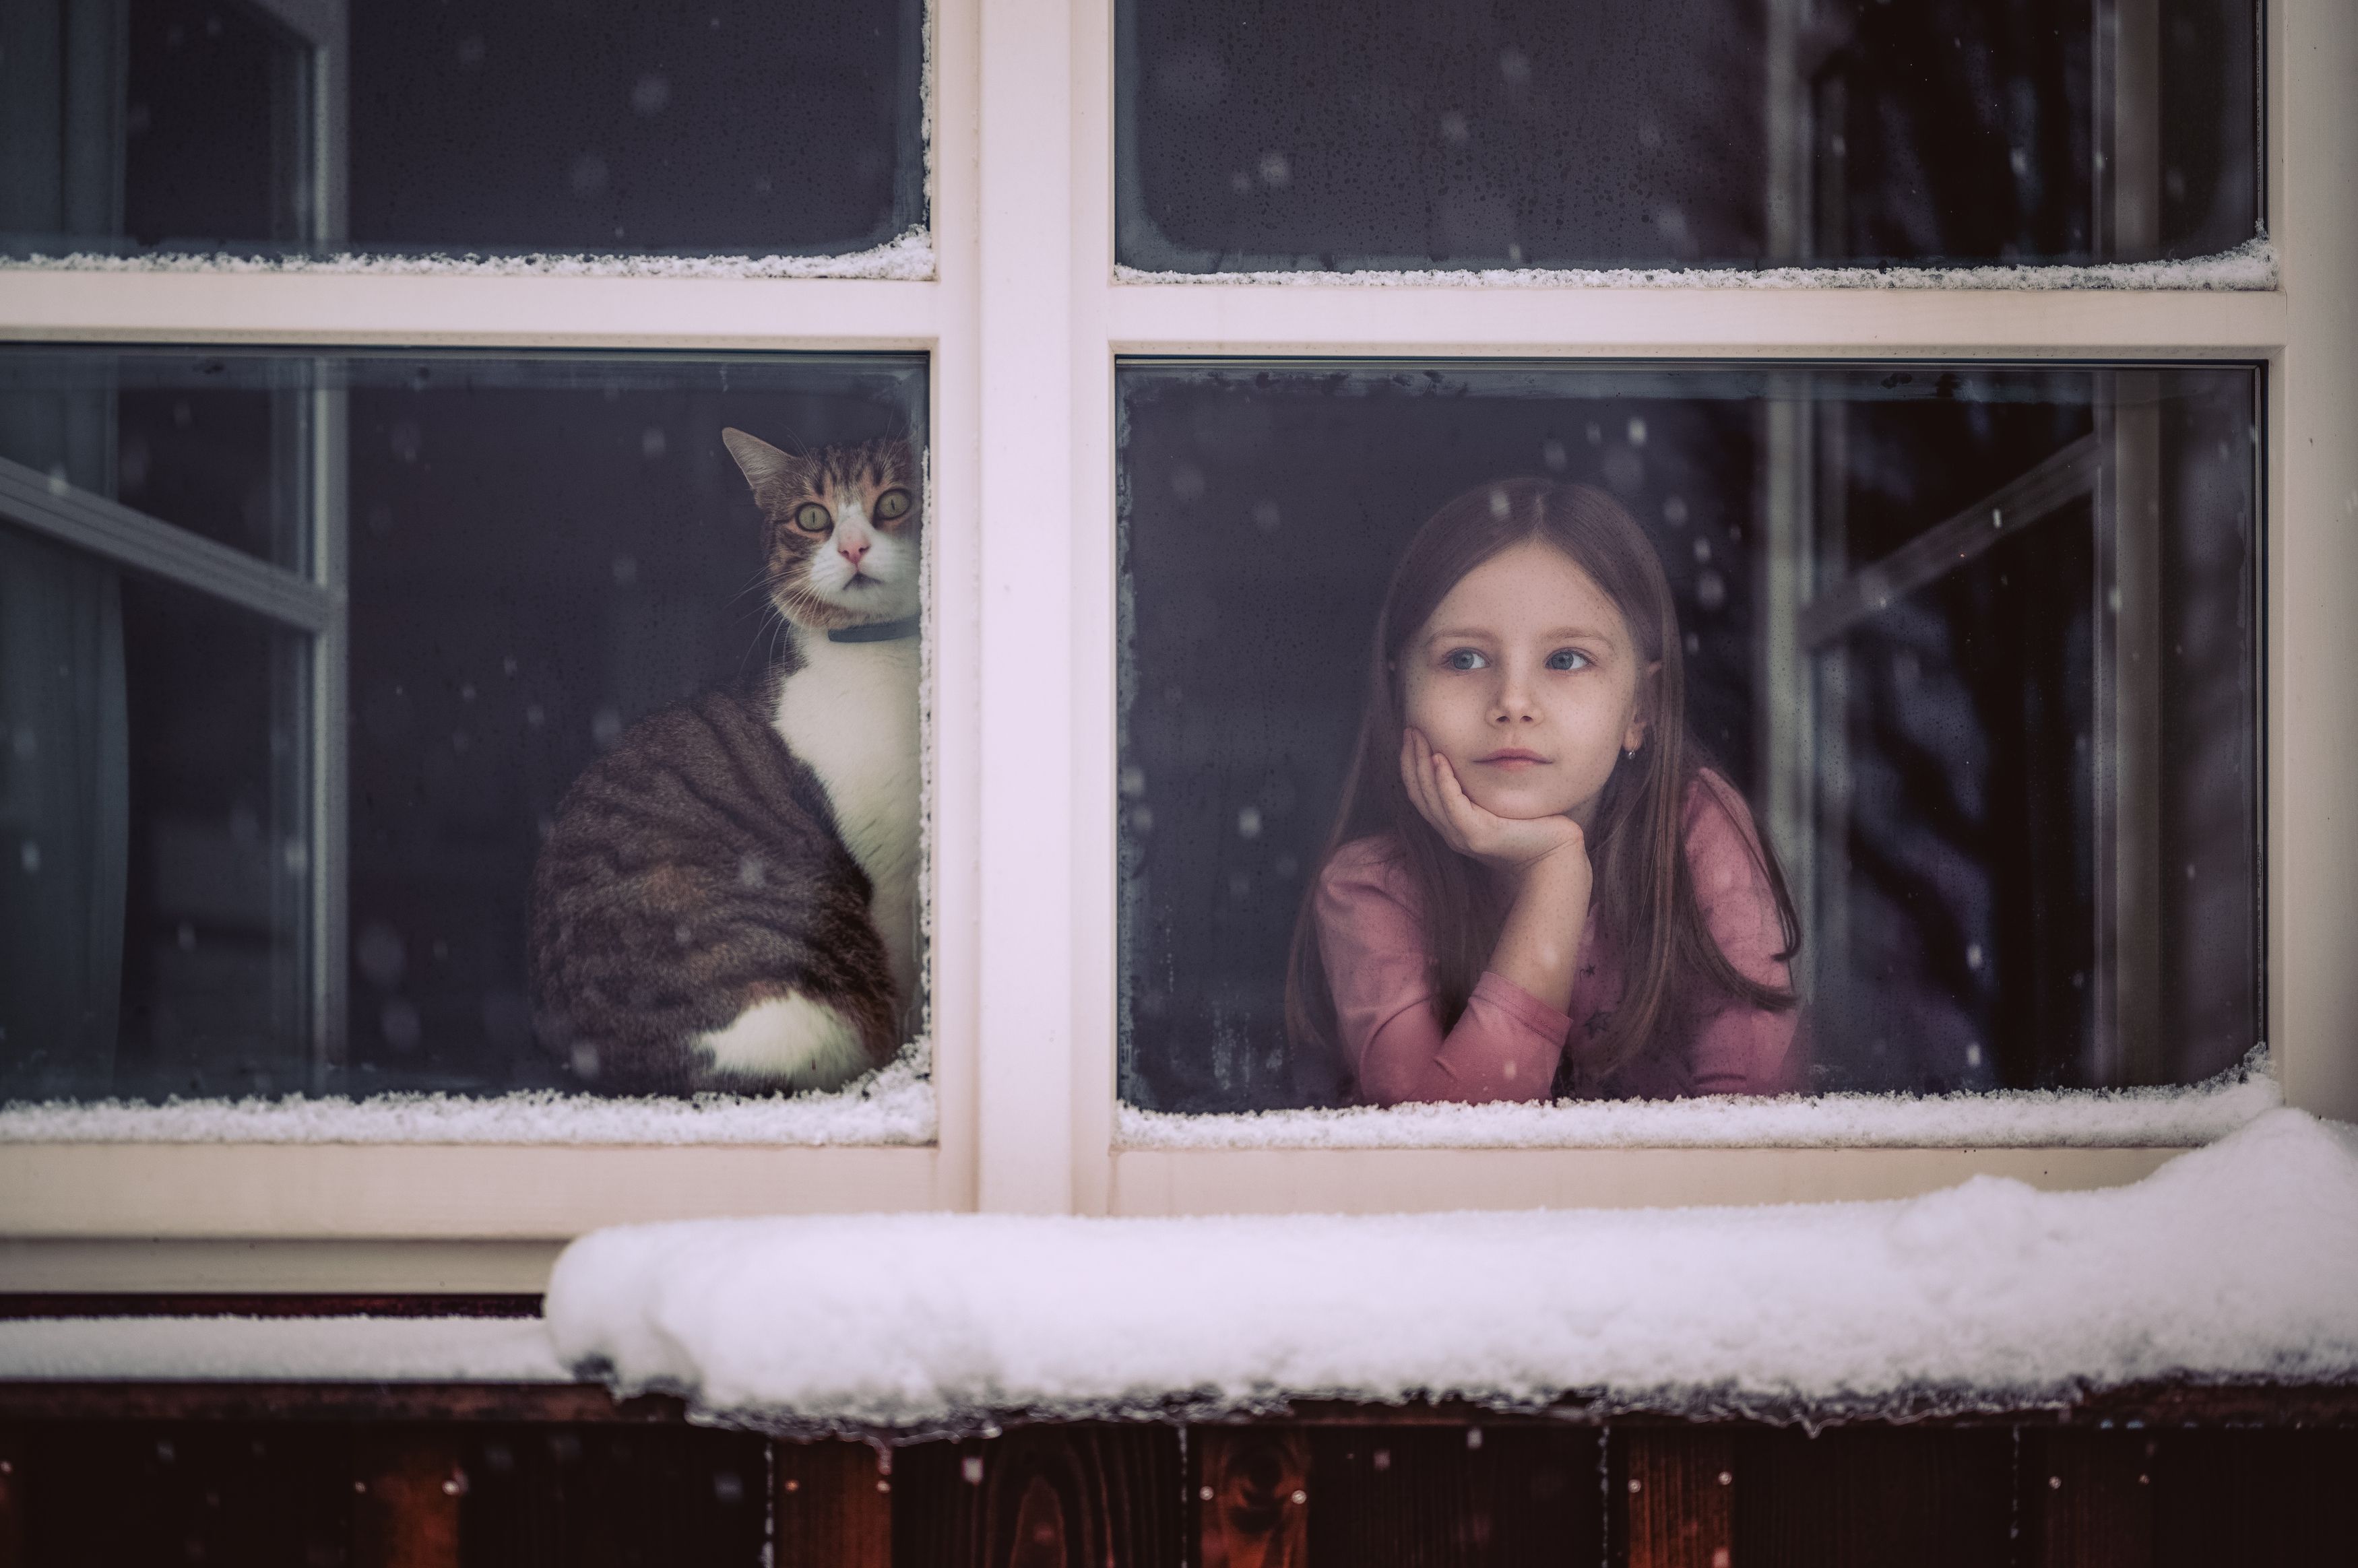 Рождественское время, christmas, девушка, girl, kids, ребенок, cat, winter, snow, Stanislav Judas